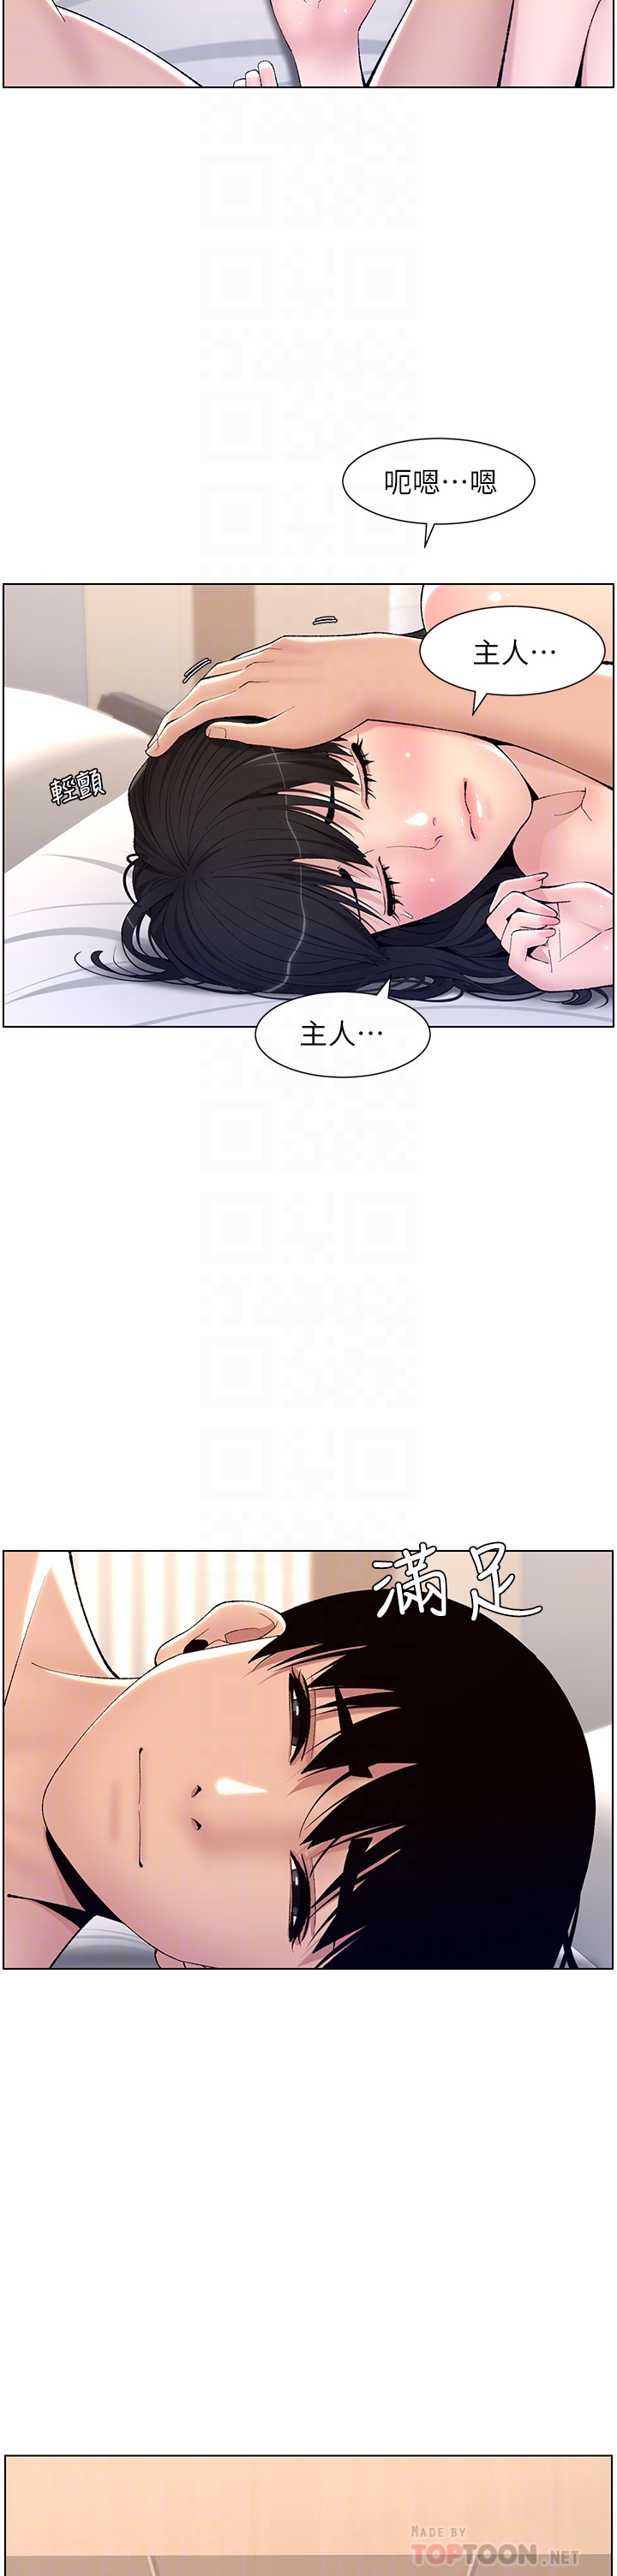 韩国污漫画 帝王App 第11话 少女的第一次高潮 18